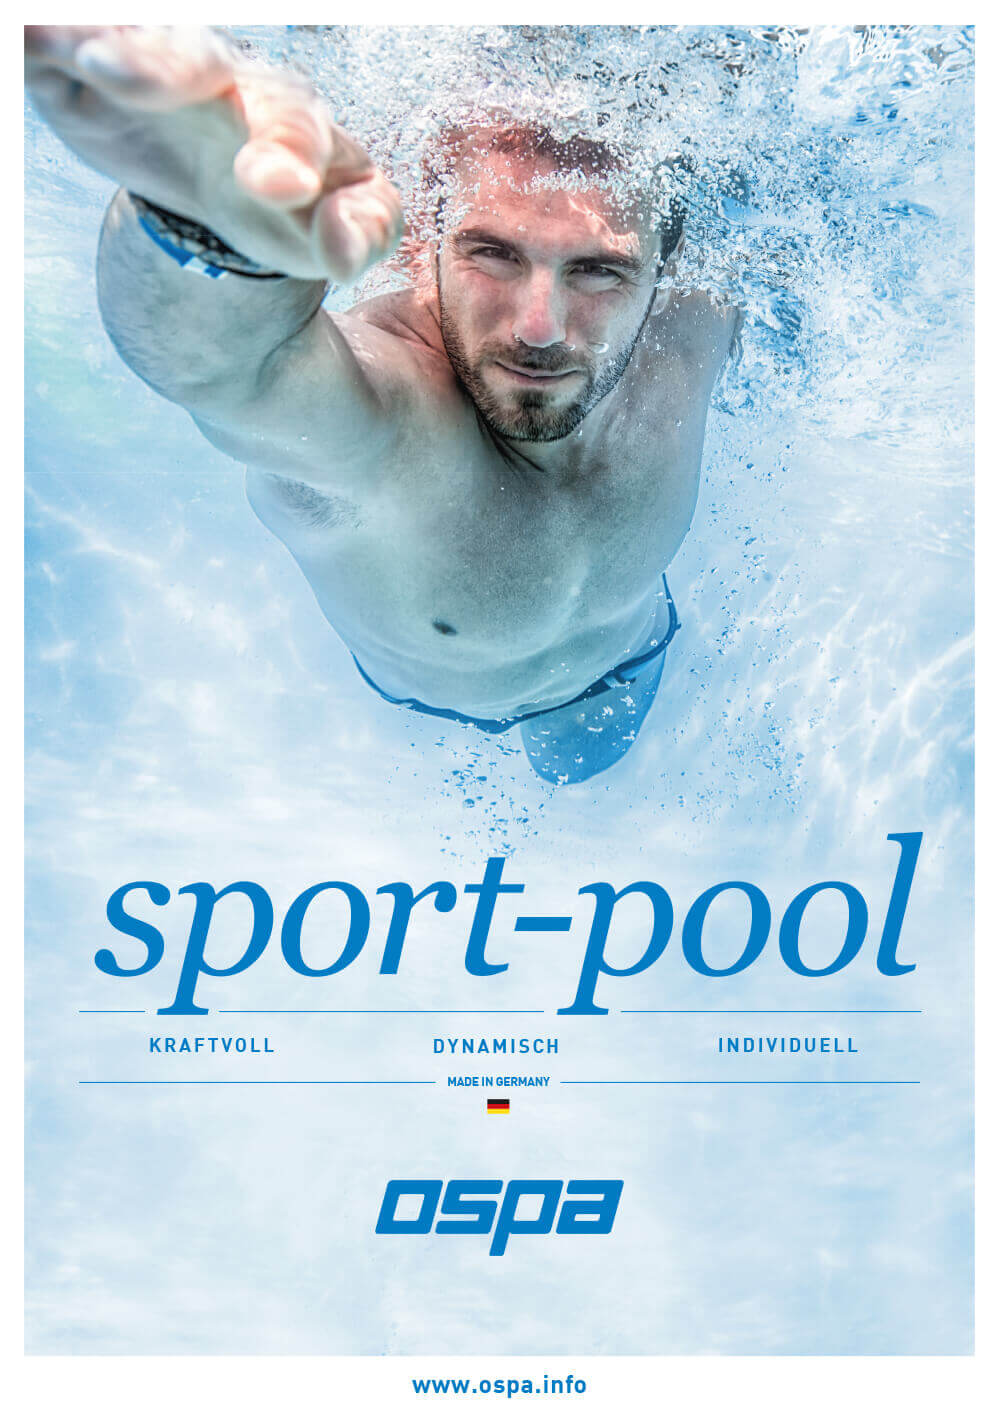 Ospa Anzeigenkampagne: dynamischer Schwimmer in Gegenstromanlage